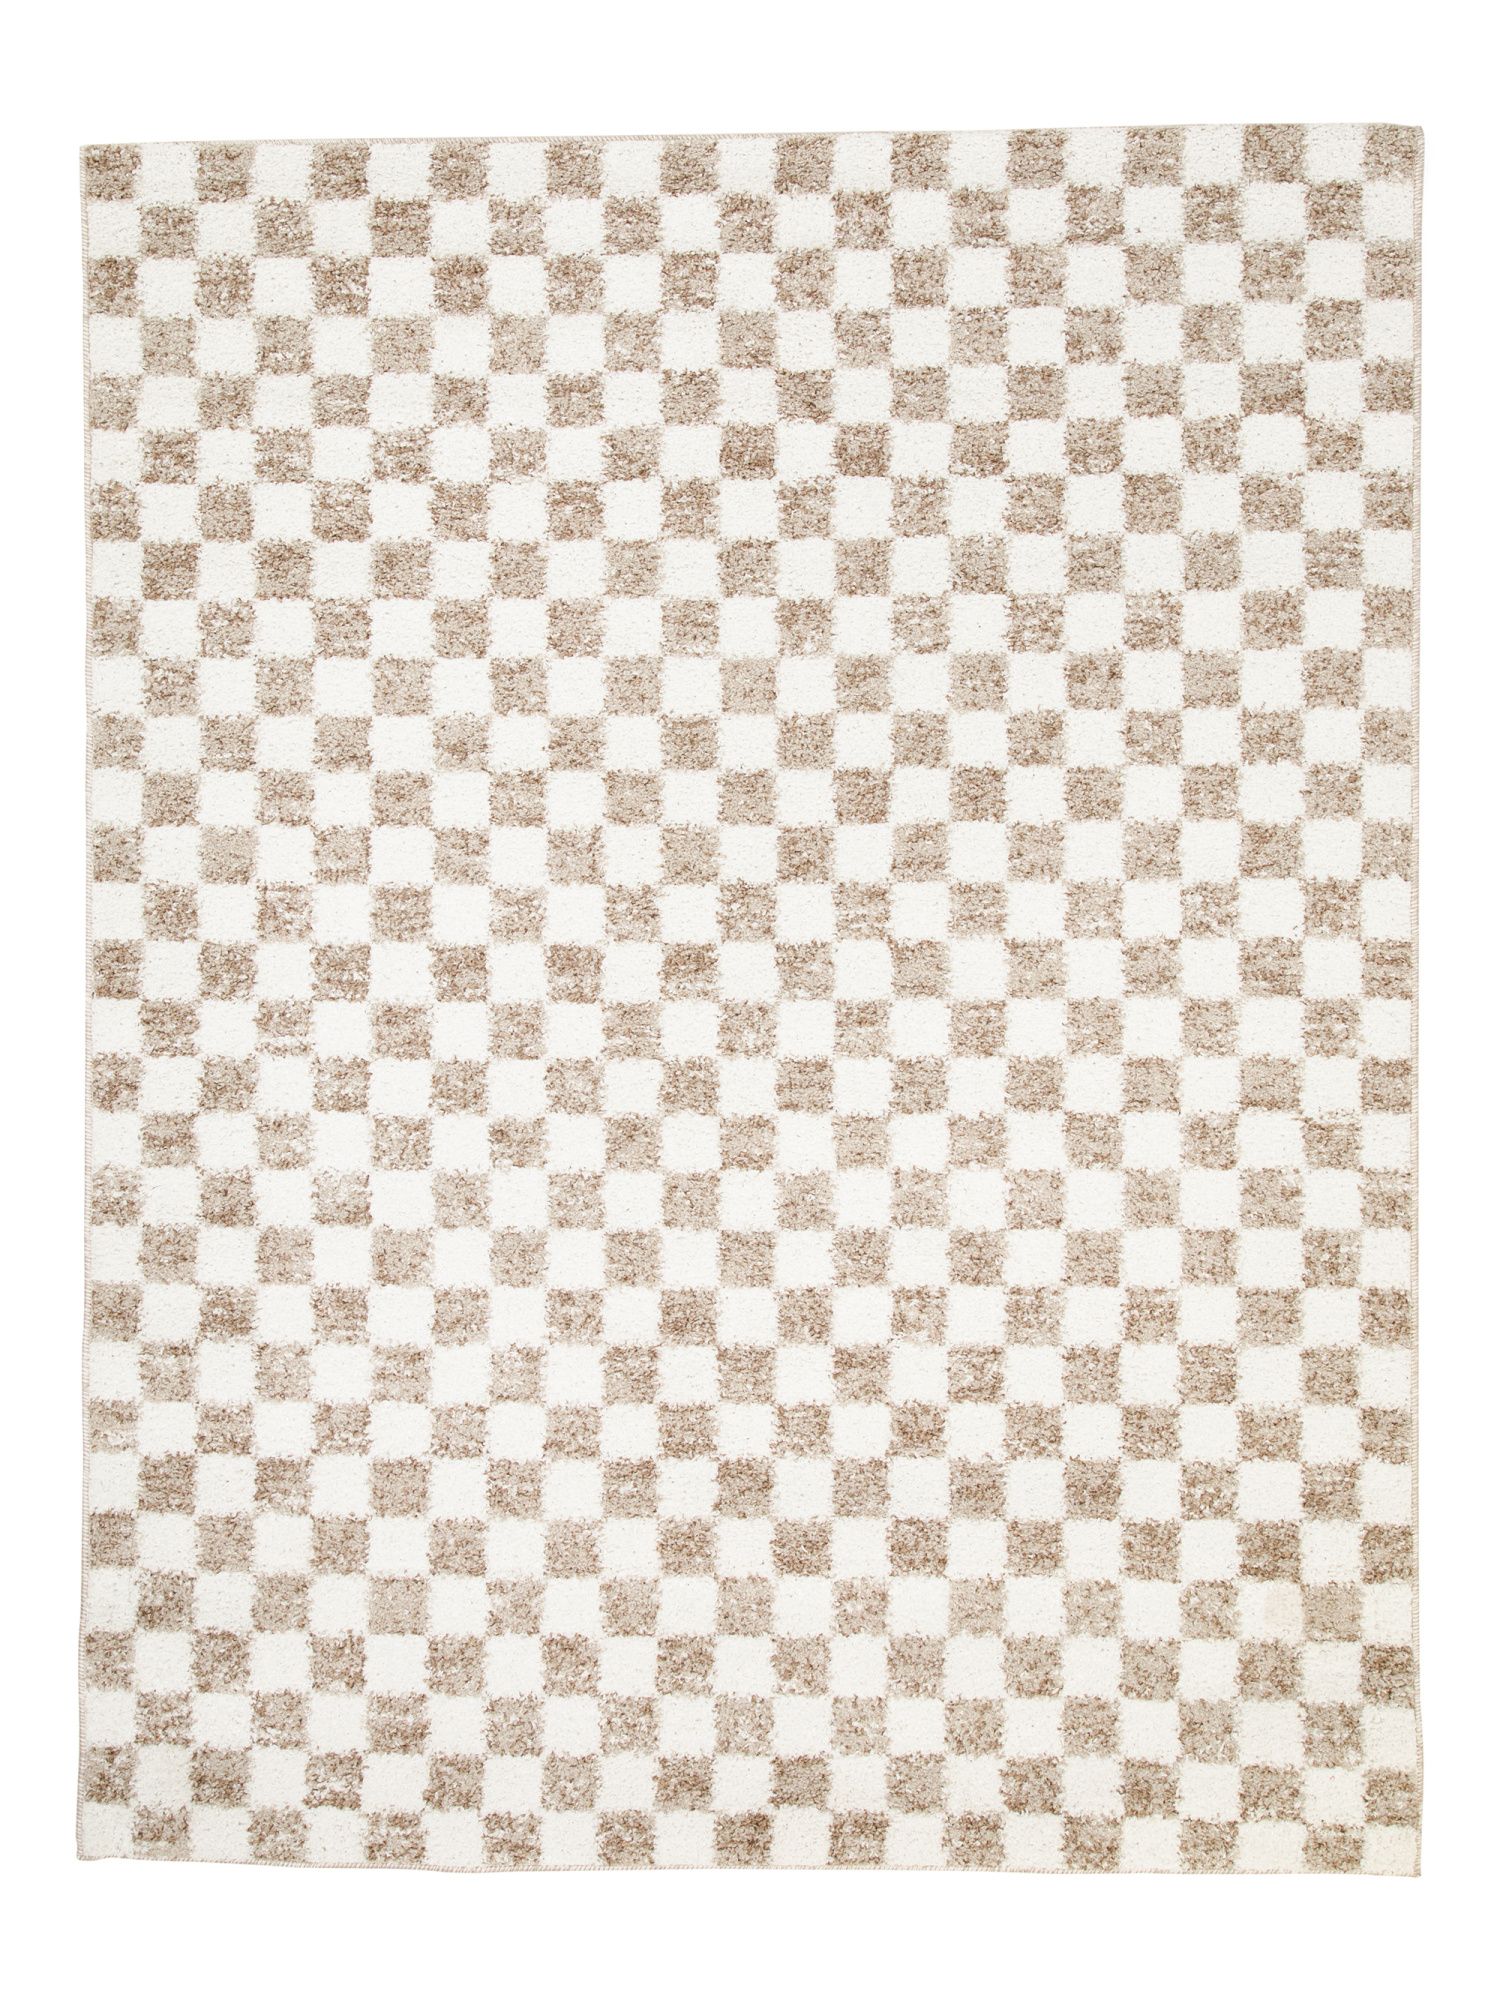 5x7 Checkered Rug | TJ Maxx